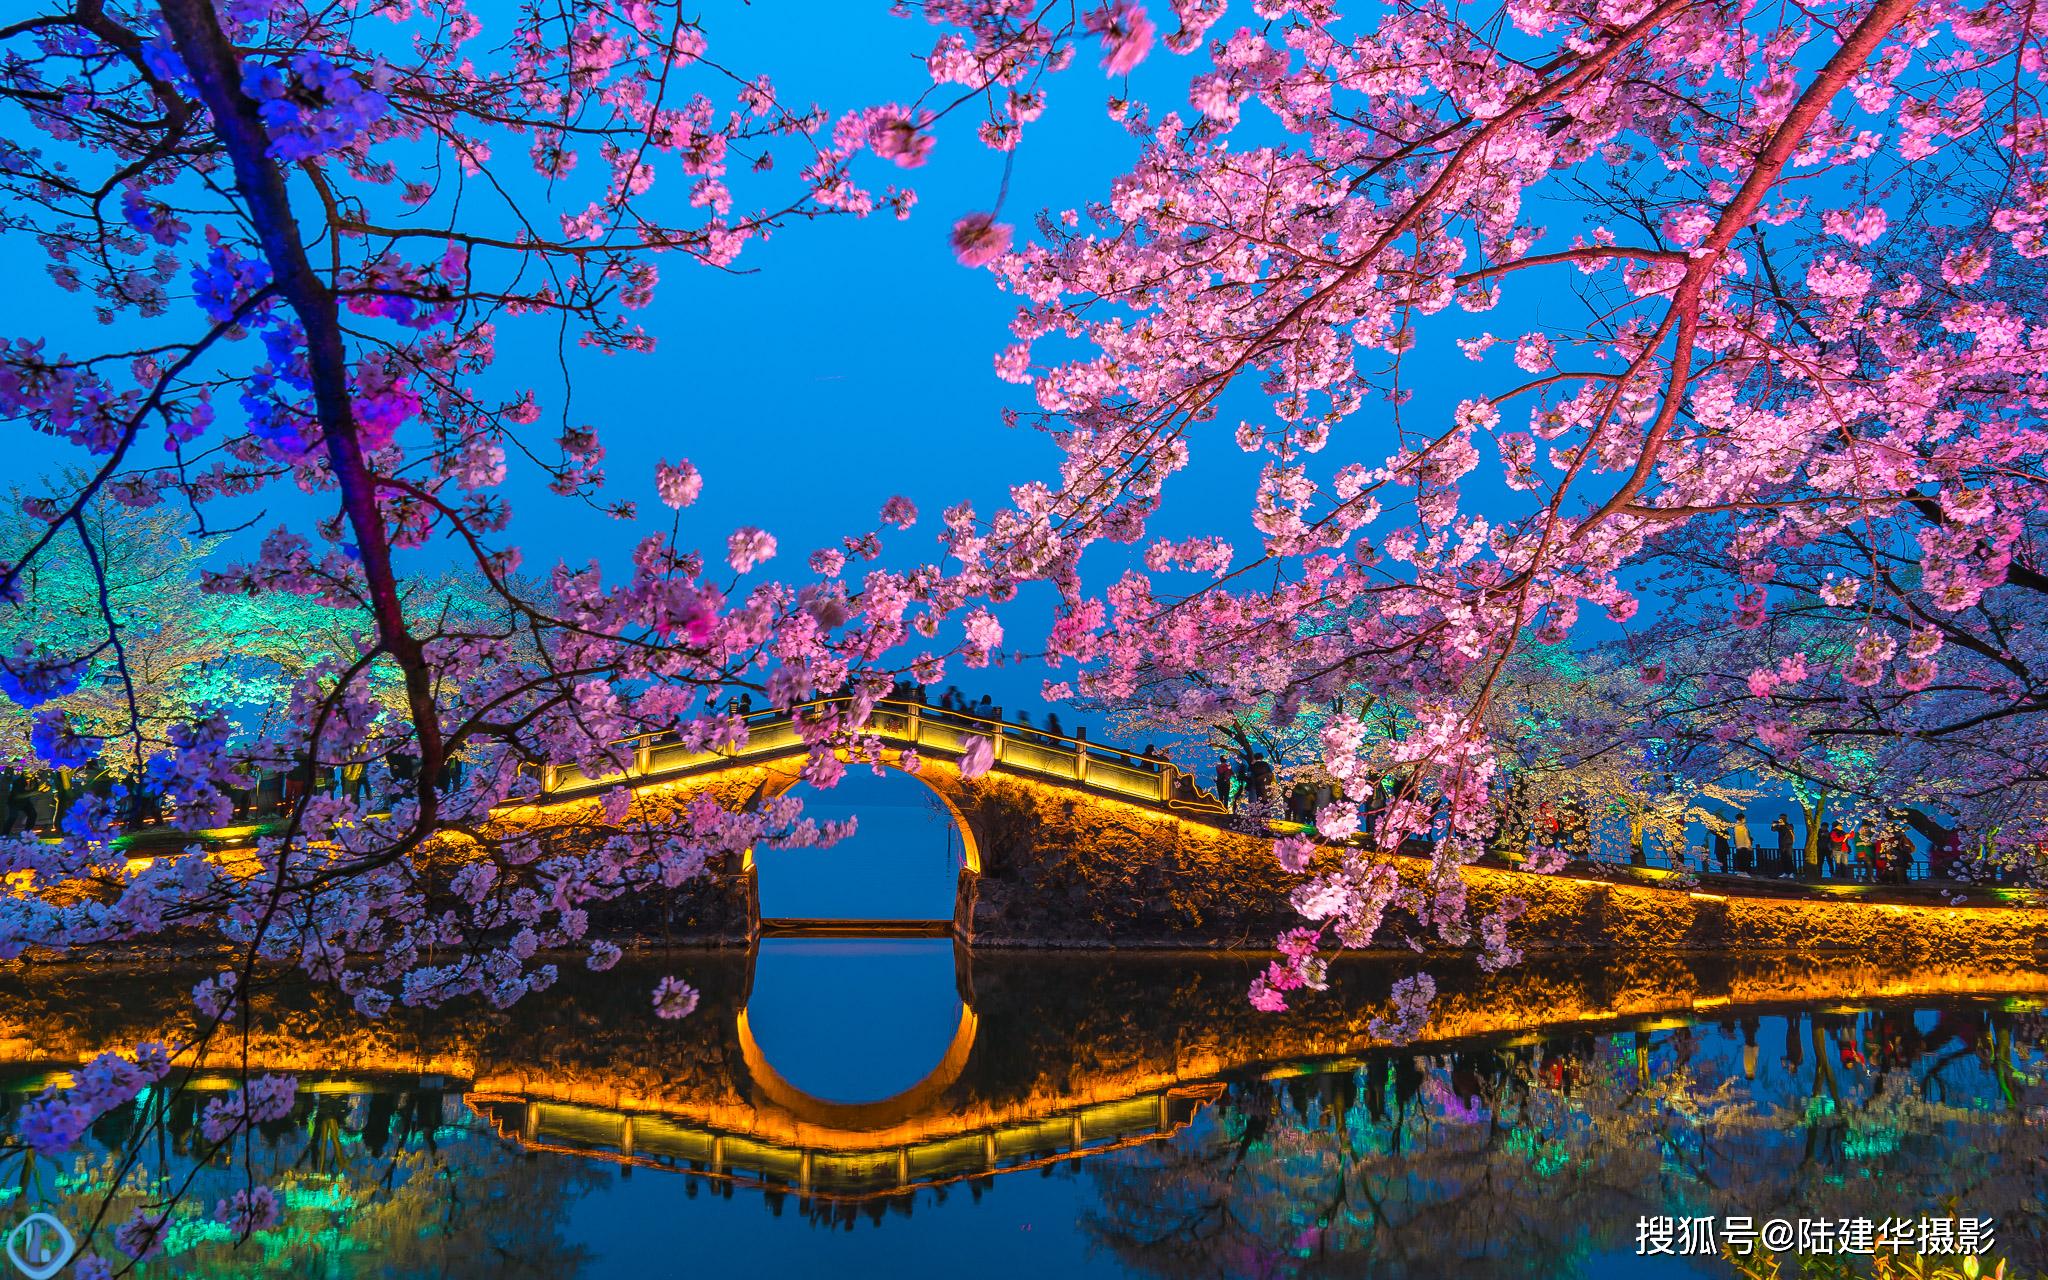 原创第一枝樱花开的时候终于盼来了太湖鼋头渚开园的好消息